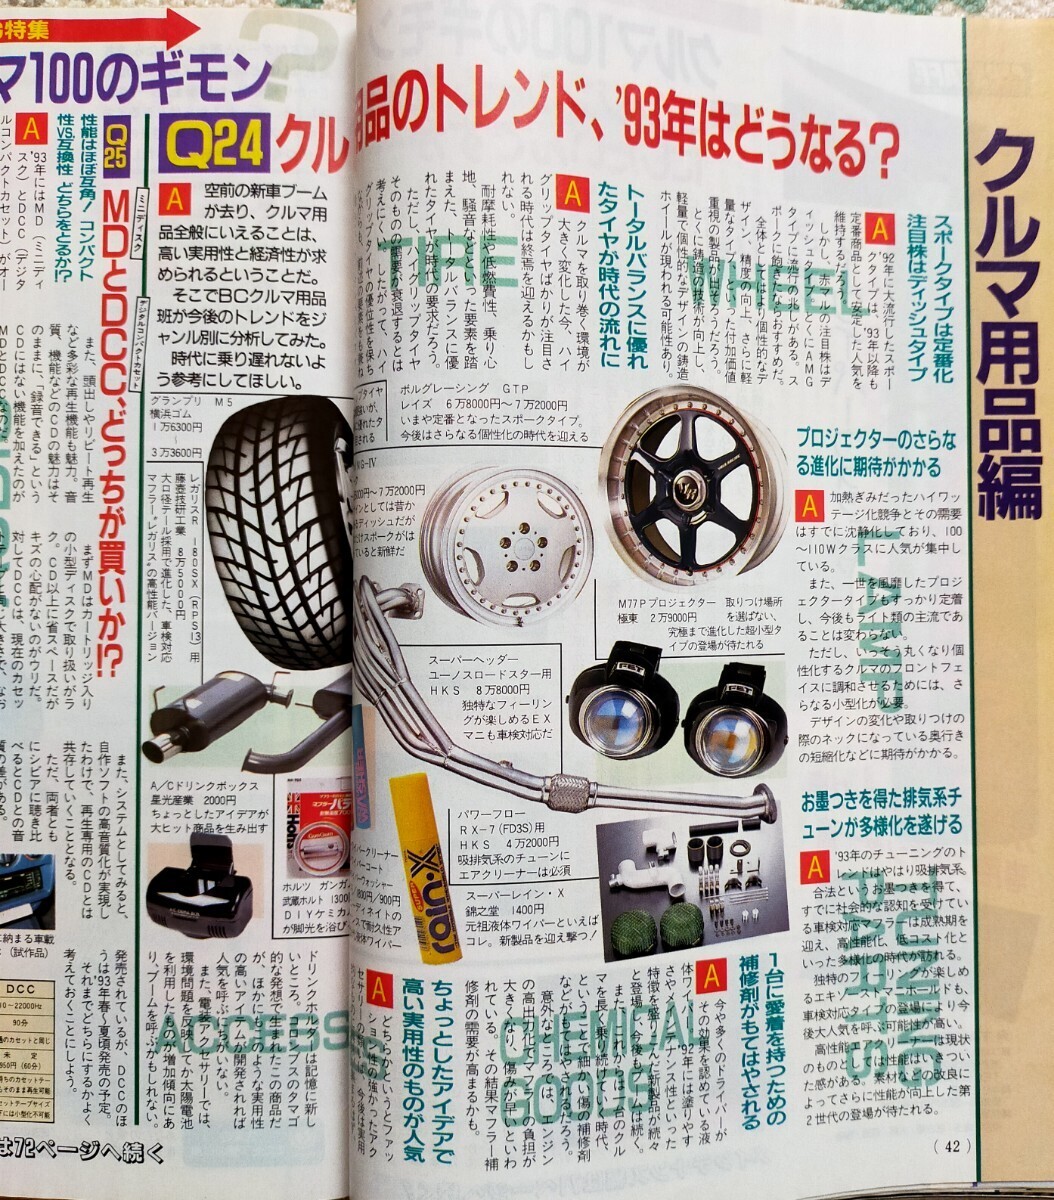 ベストカー Best Car 内田有紀 表紙 1993年1月 自動車雑誌 講談社 スカイラインGT-R セドリックの画像4